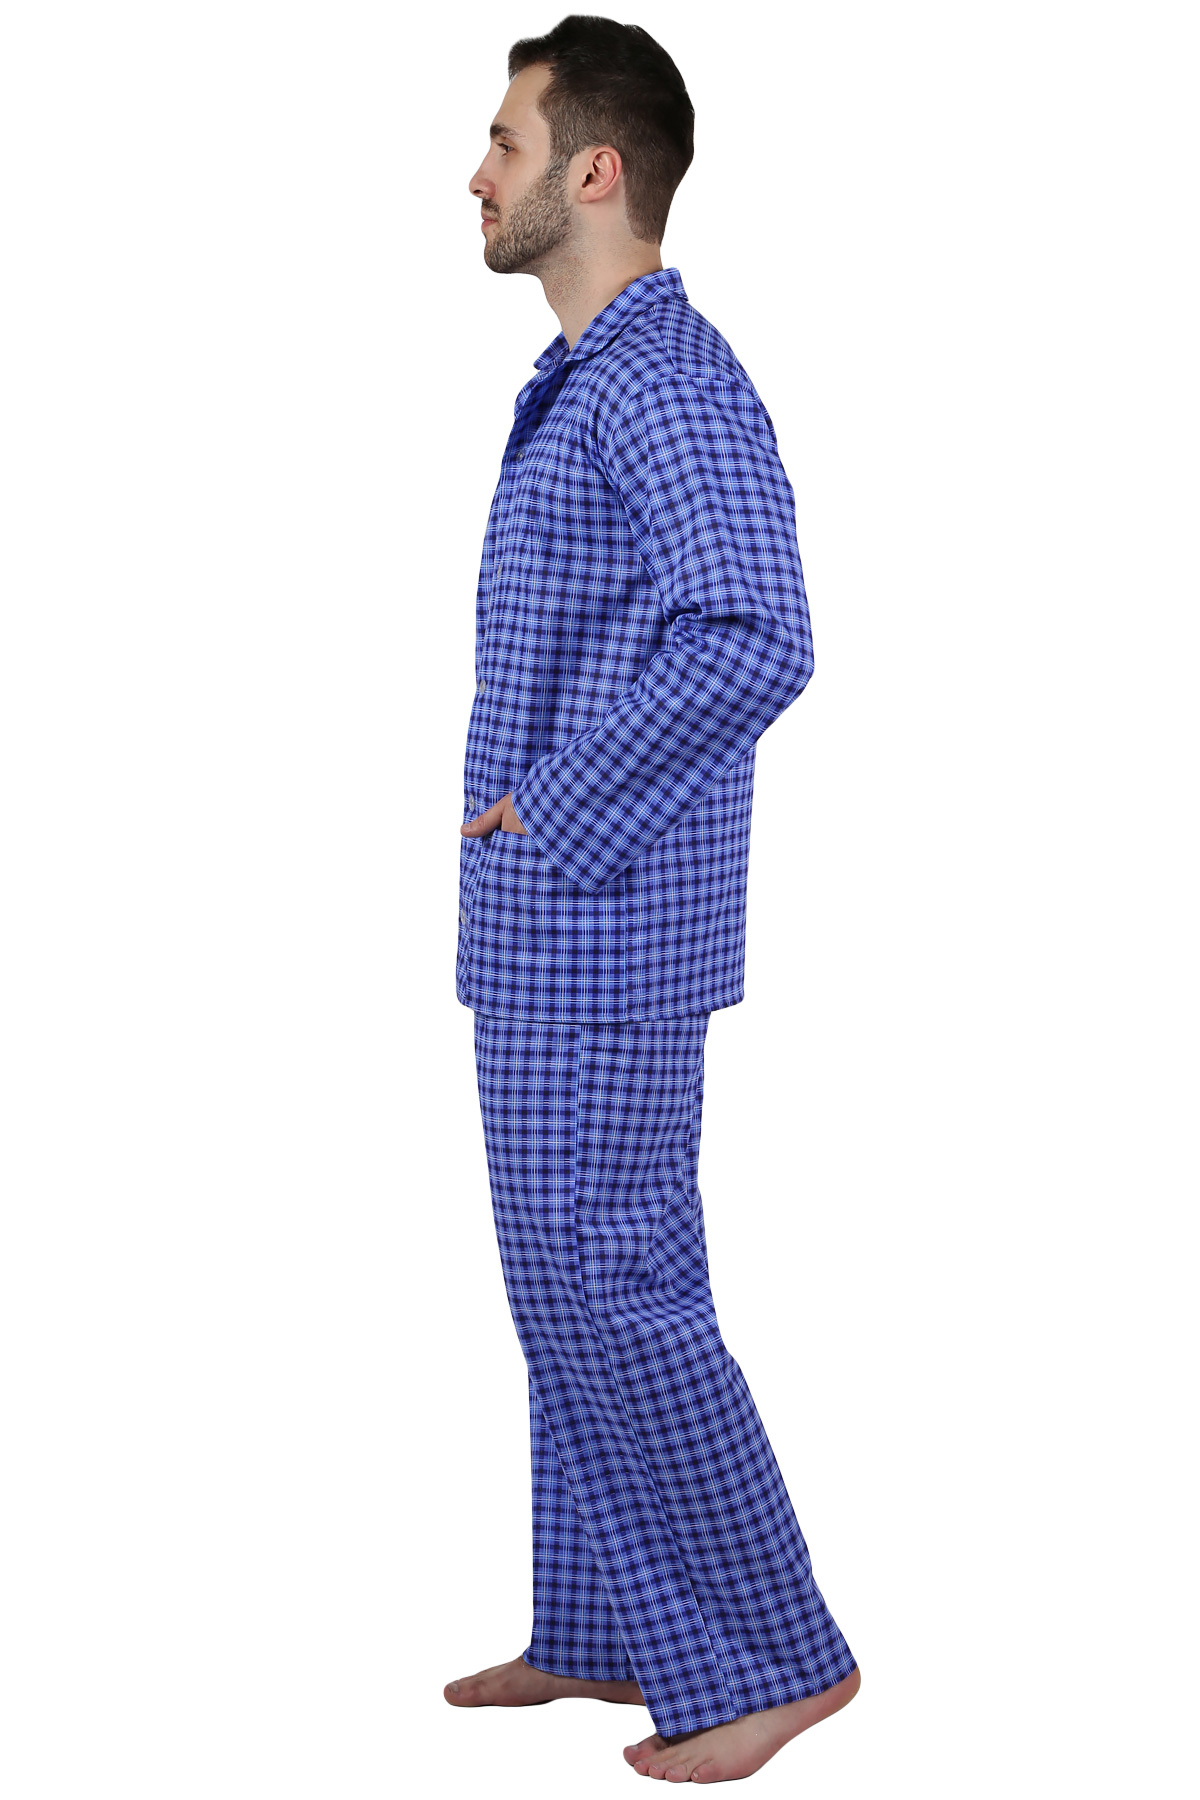 Муж. пижама арт. 22-0210 В ассортименте р. 58 Оптима трикотаж, размер 58 - фото 2